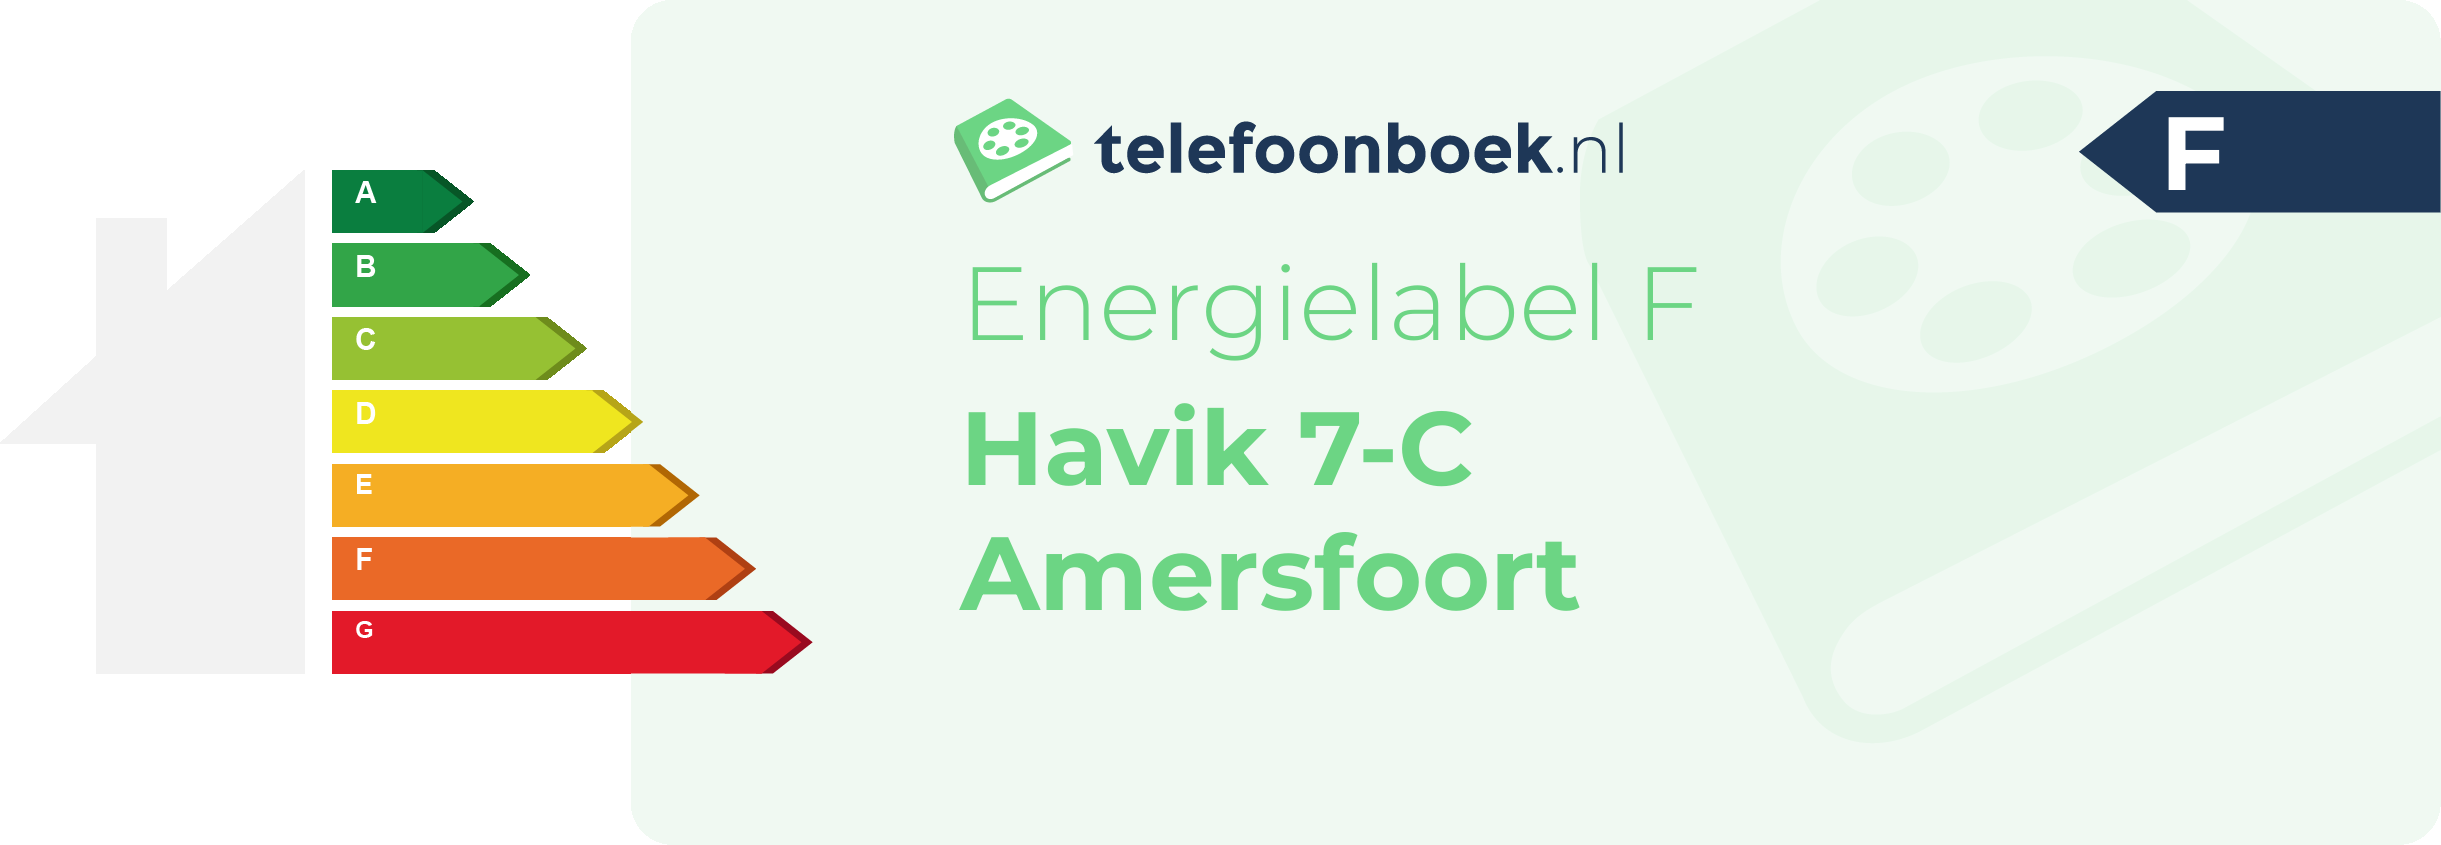 Energielabel Havik 7-C Amersfoort